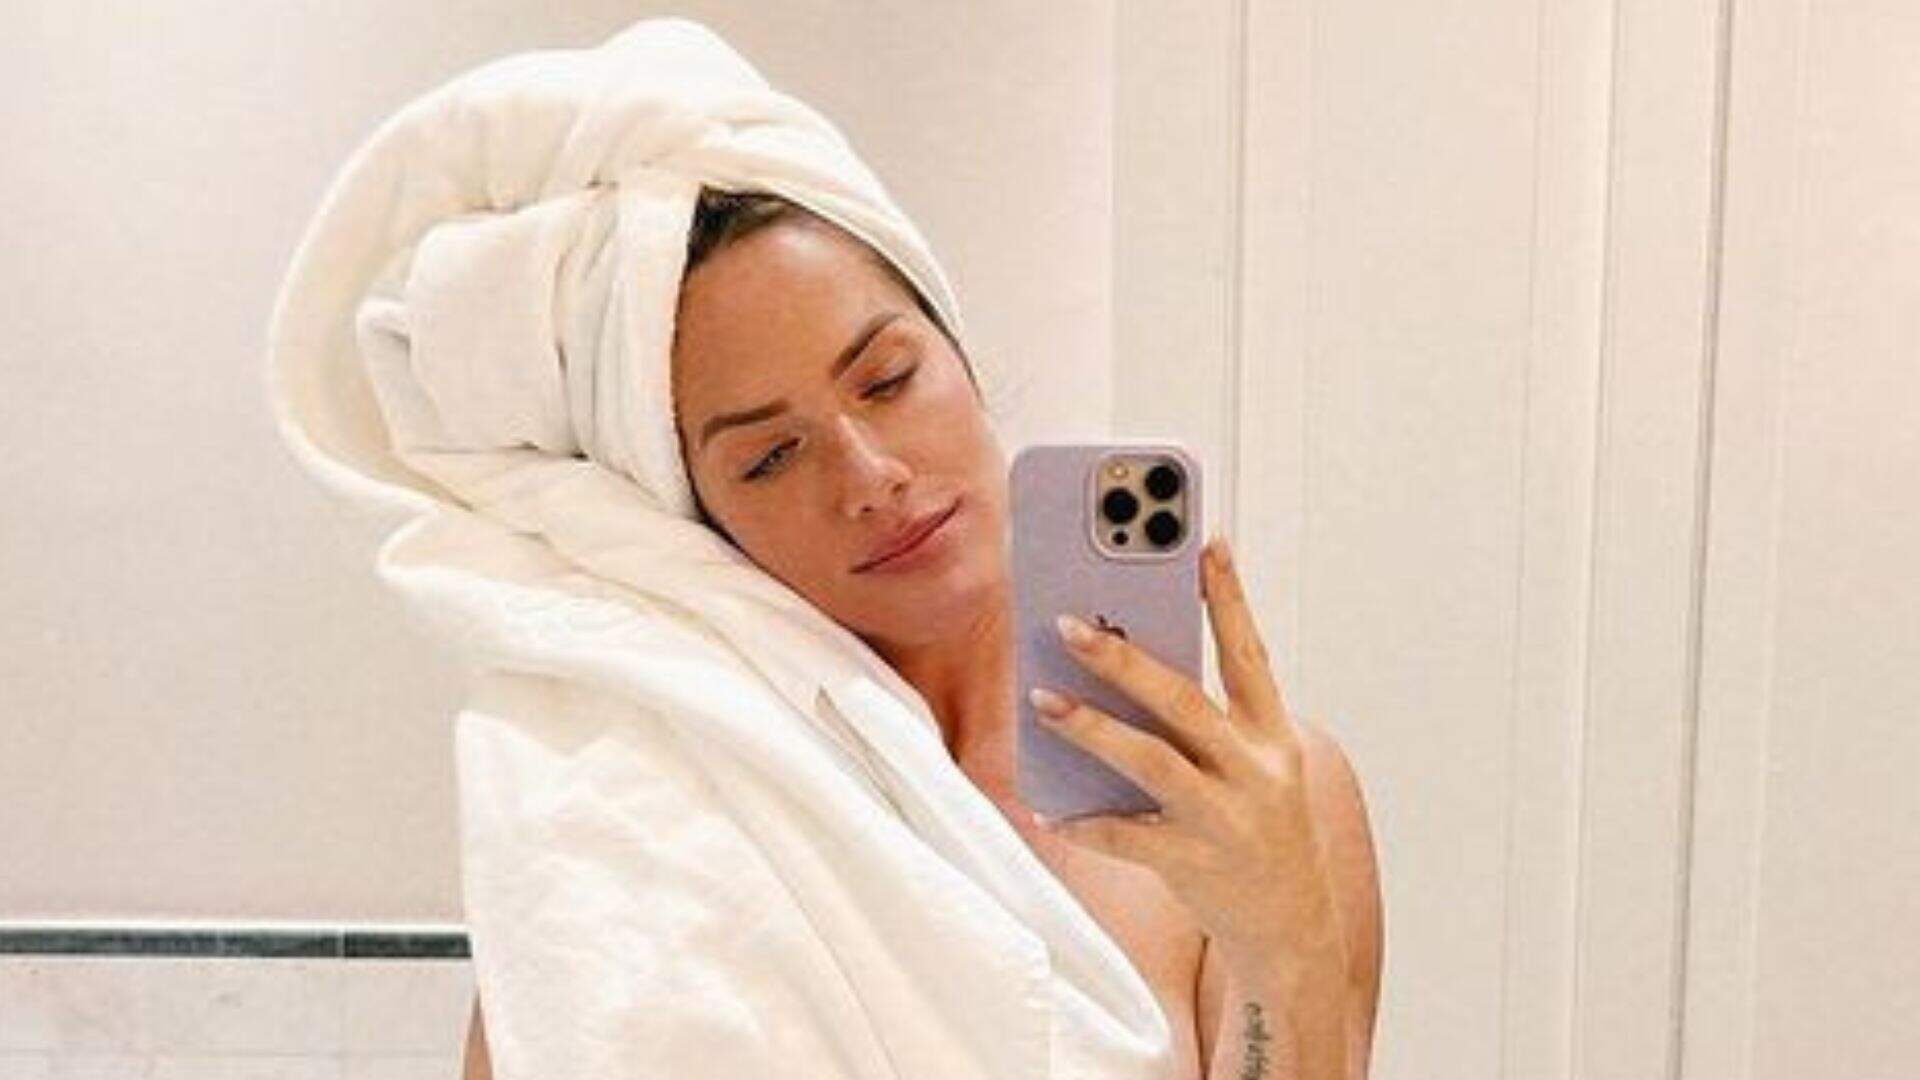 Em quarto de hotel, Giovanna Ewbank é clicada sem camiseta na sacada: “Proibido compartilhar” - Metropolitana FM